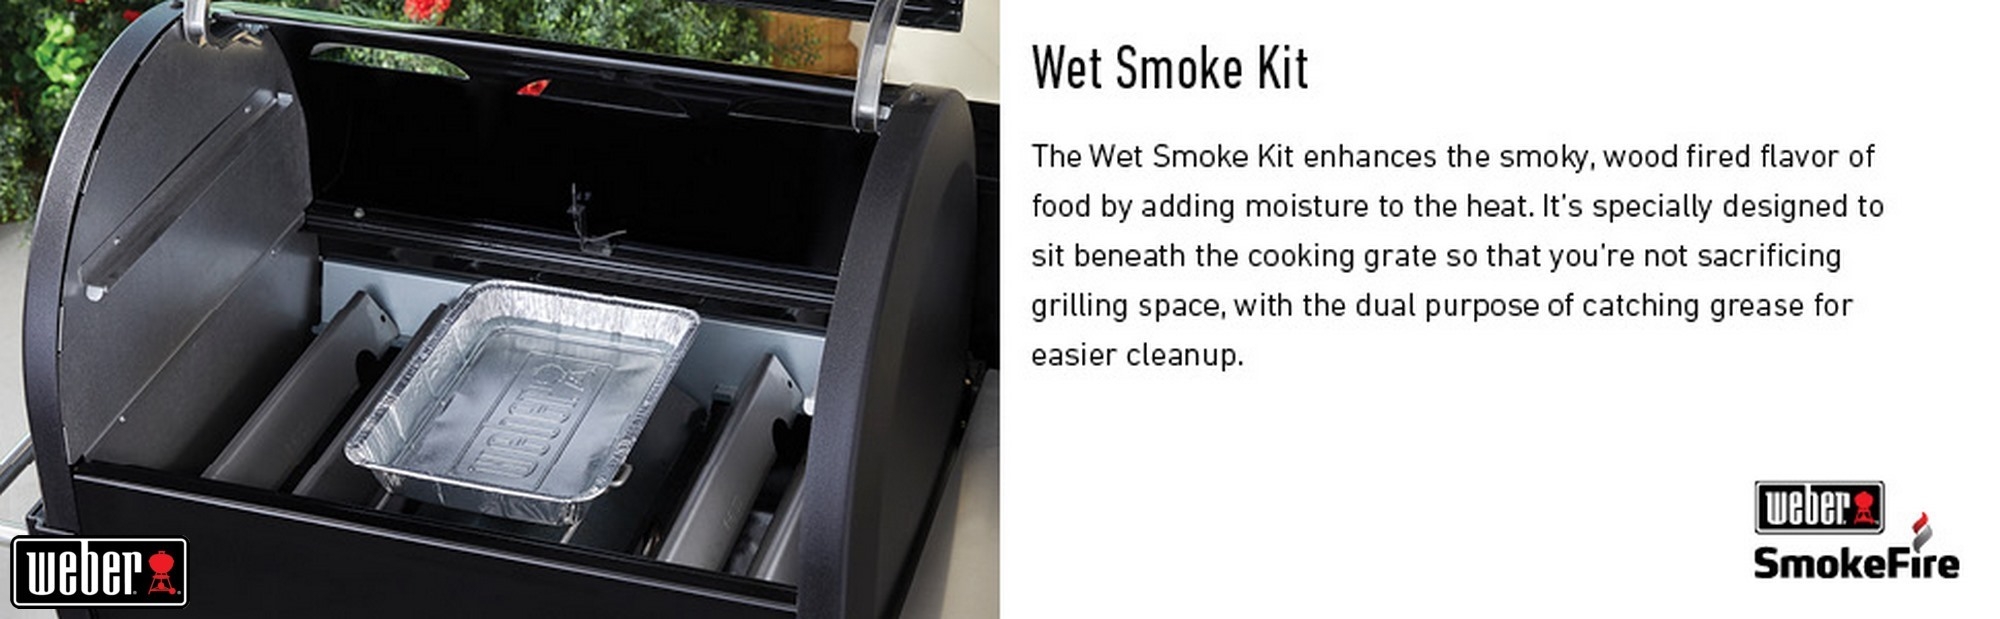 Wet-Smoke-Kit